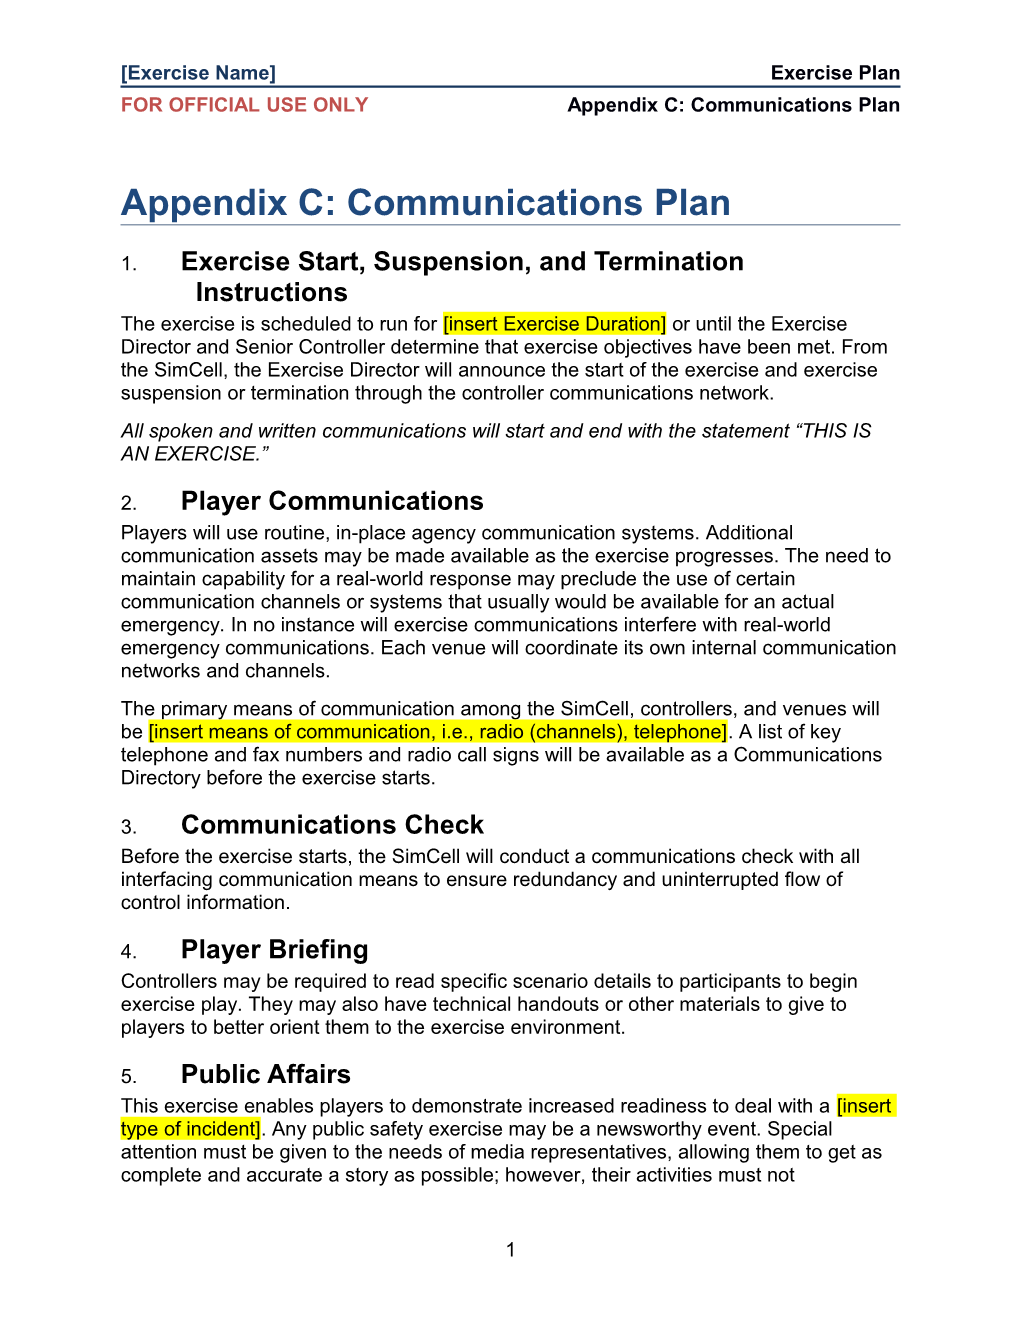 Exercise Plan Template Appendix C-Communications Plan